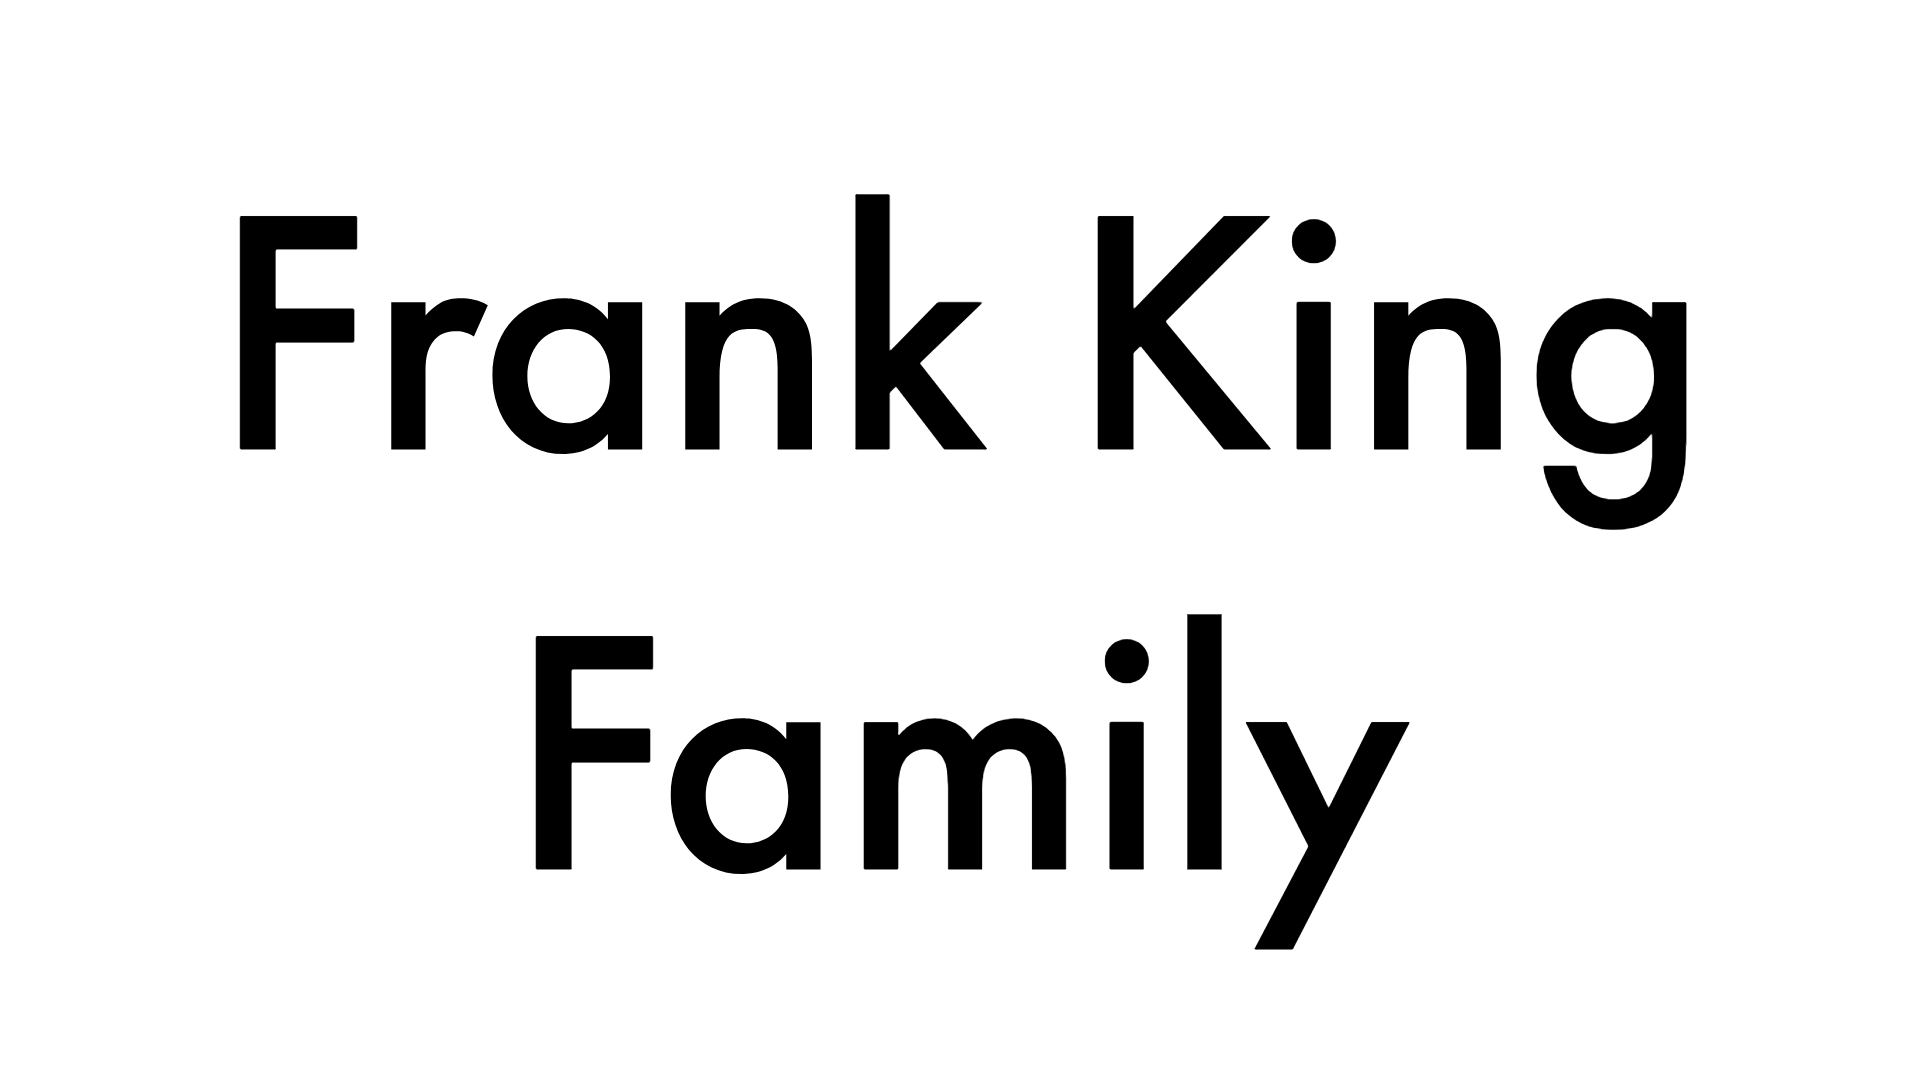 Frank King Family logo